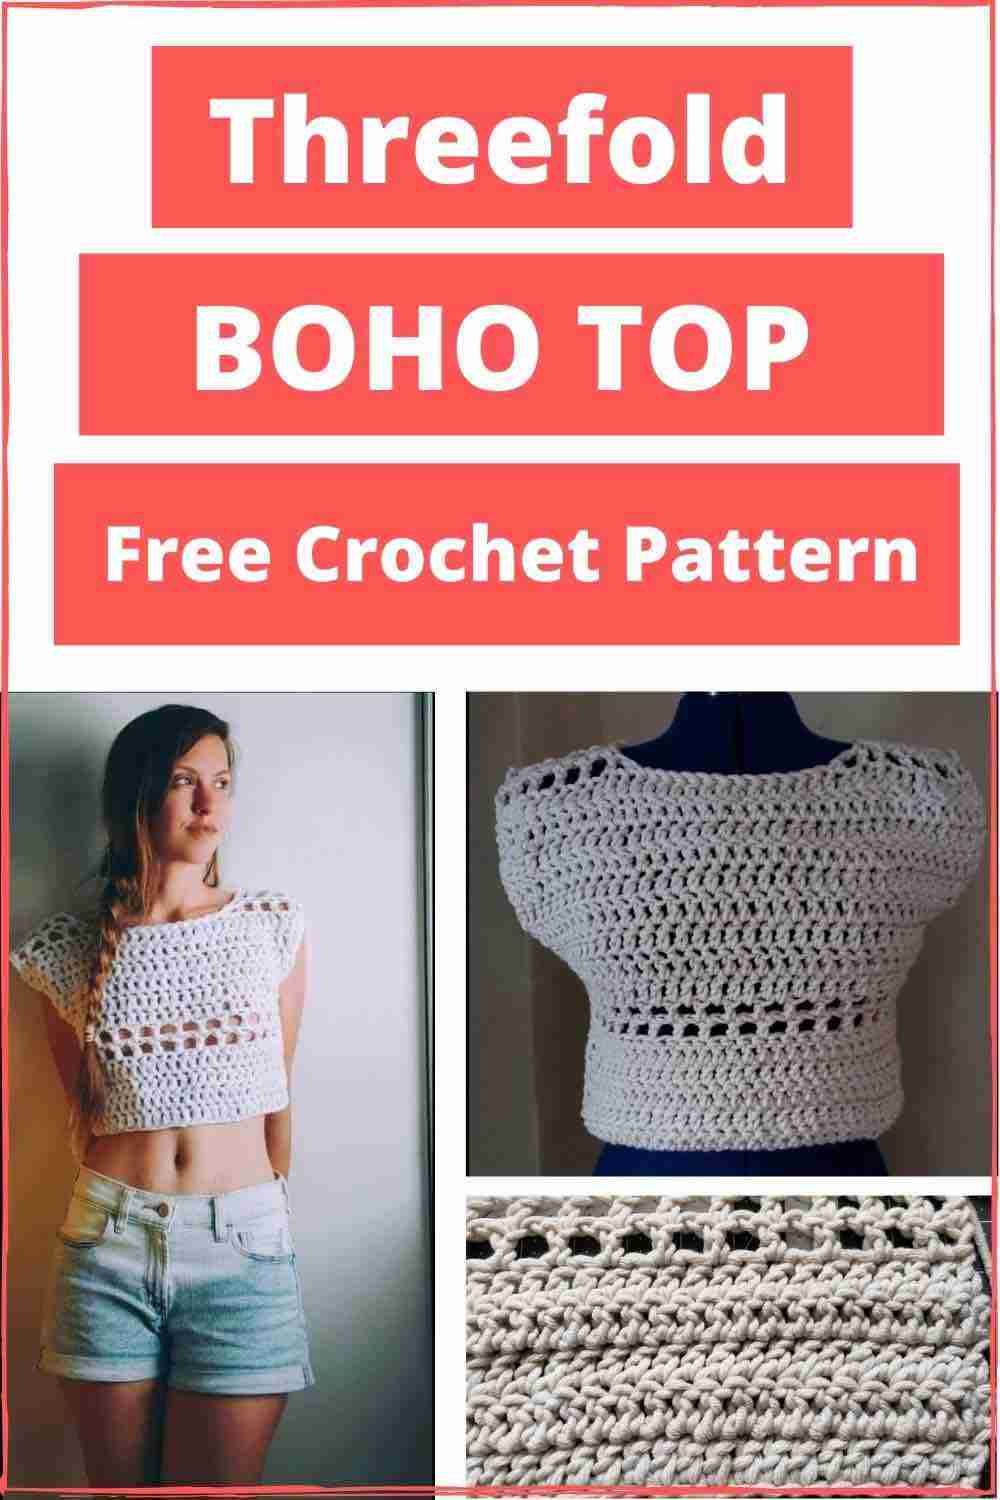 Boho-Top-Free-Crochet-Pattern.